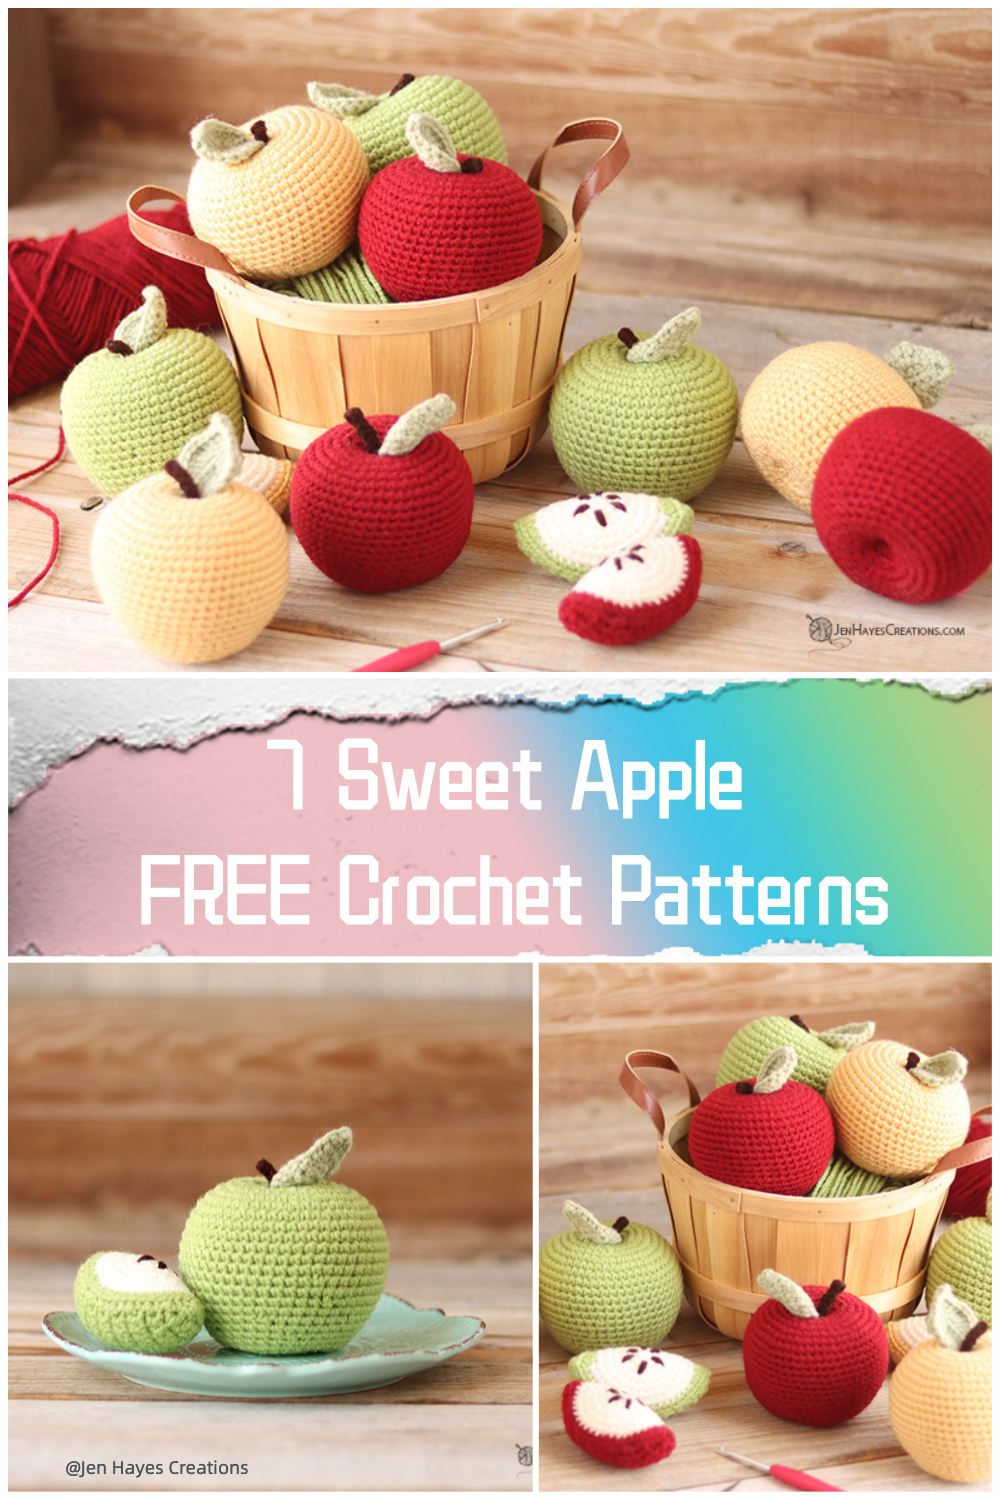  7 Sweet Apple FREE Crochet Patterns